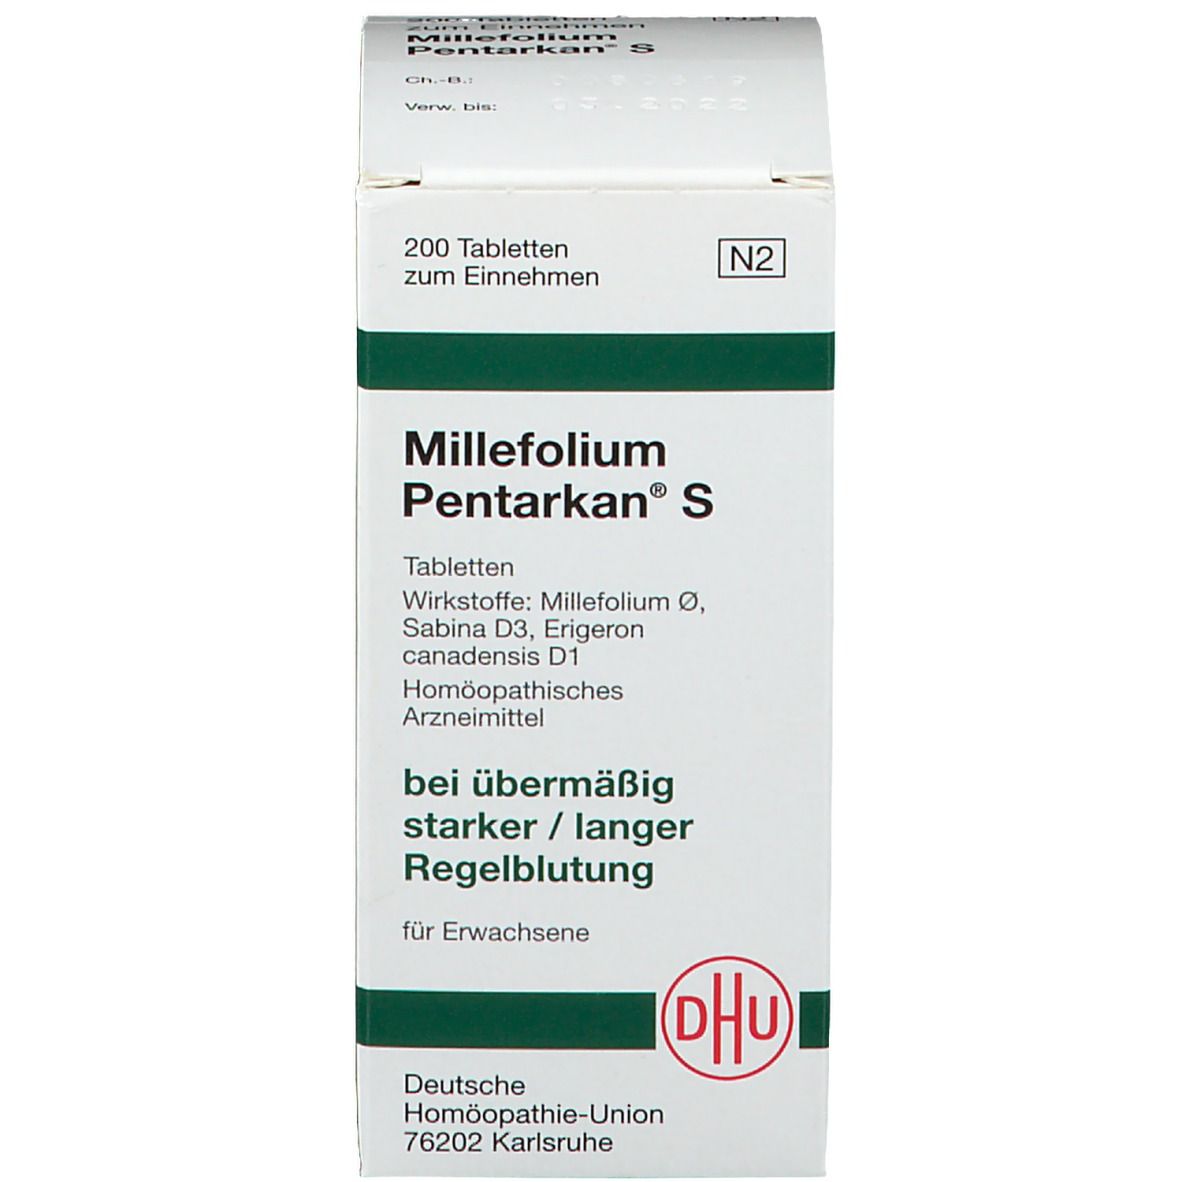 Millefolium Pentarkan S Tabletten